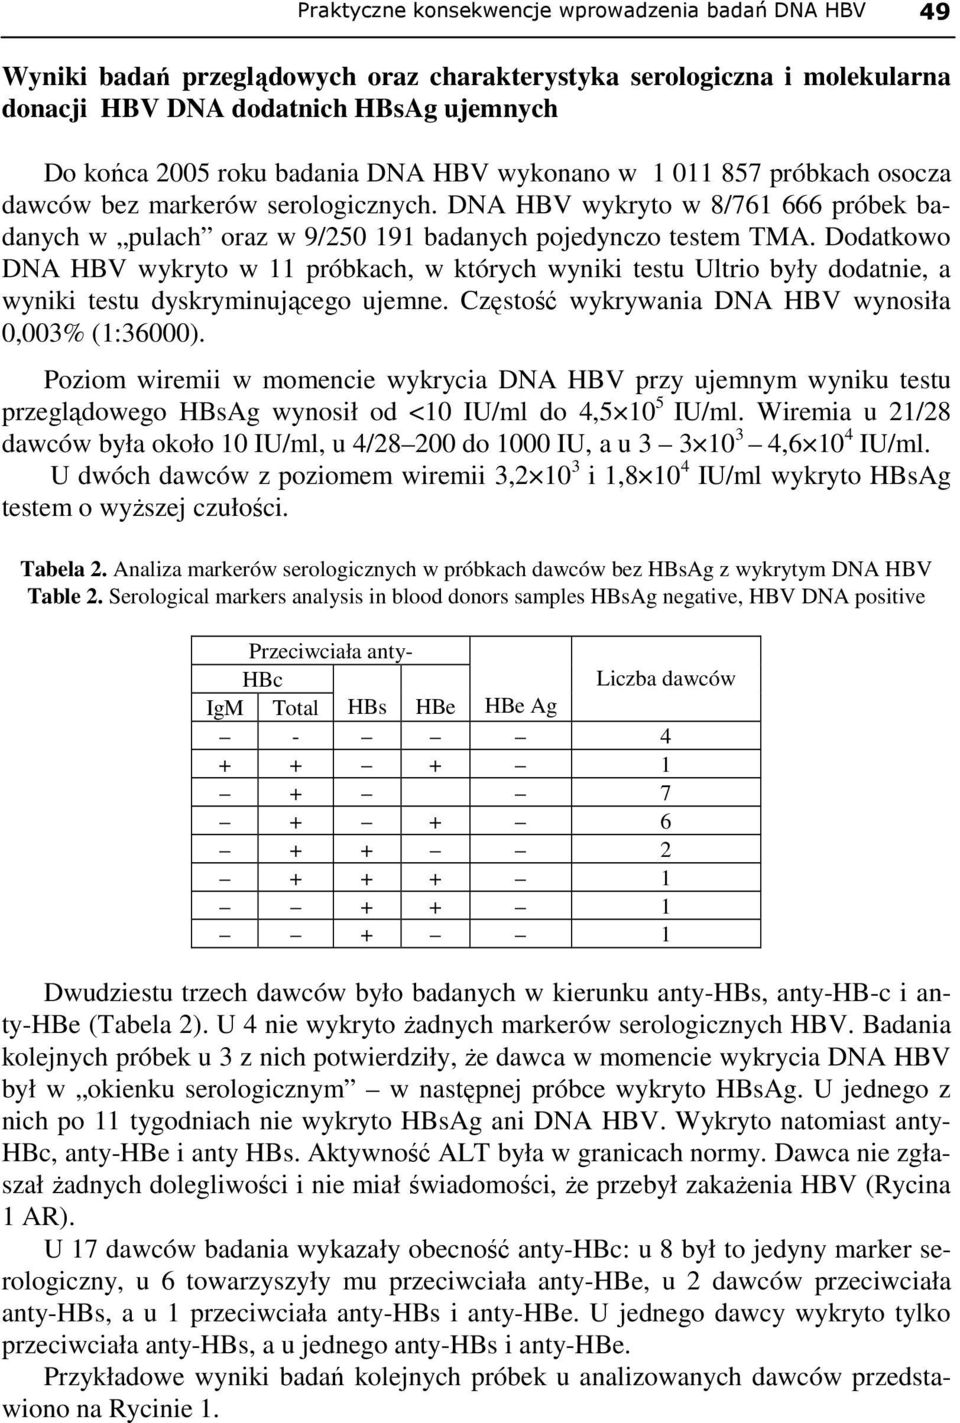 Dodatkowo DNA HBV wykryto w 11 próbkach, w których wyniki testu Ultrio były dodatnie, a wyniki testu dyskryminującego ujemne. Częstość wykrywania DNA HBV wynosiła 0,003% (1:36000).